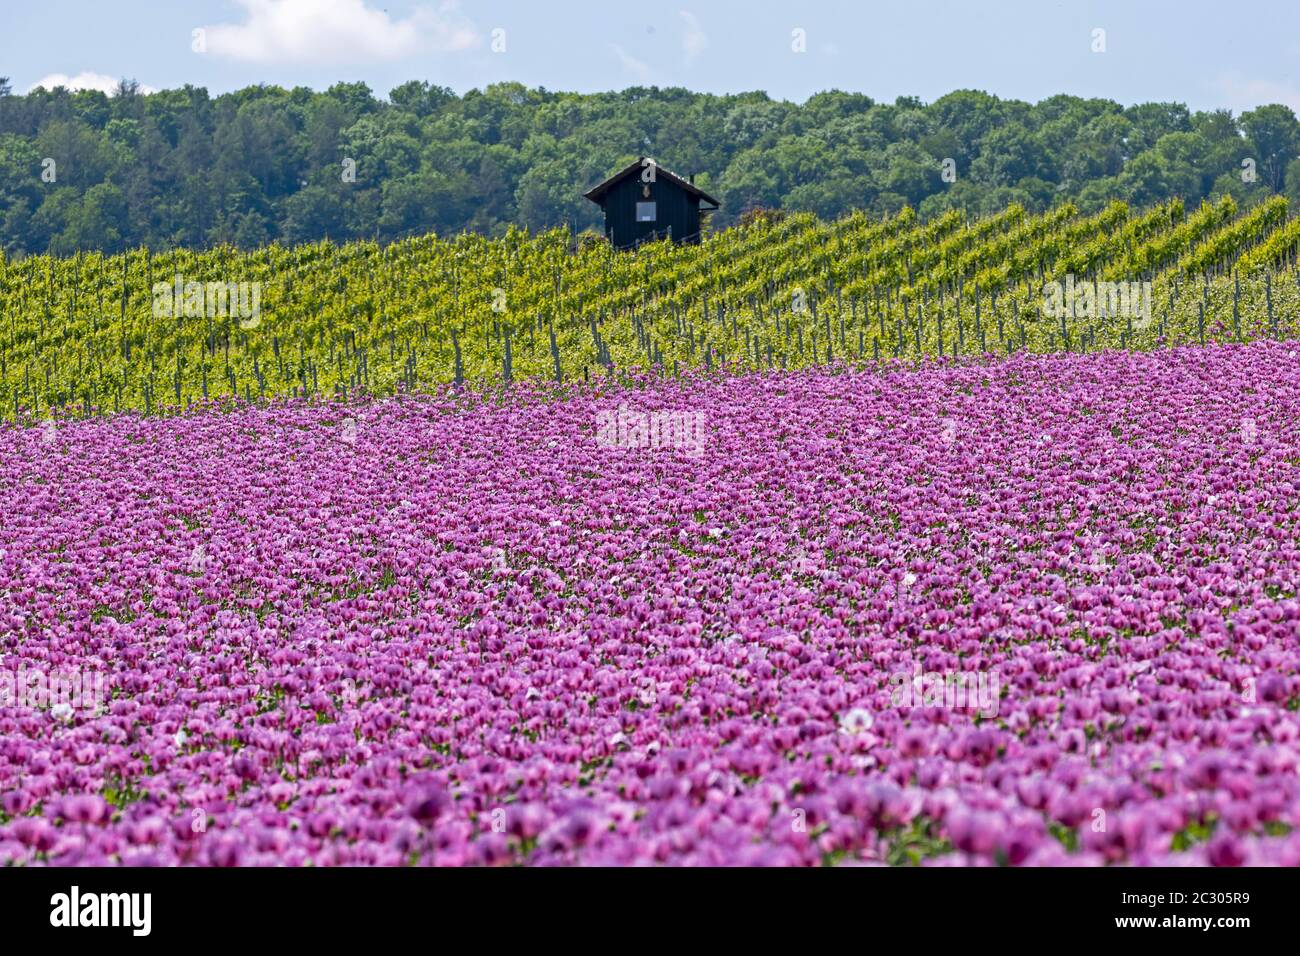 Opiummohn (Papaver somniferum) blüht auf einem Feld, Heilbronn, Baden-Württemberg, Deutschland Stockfoto